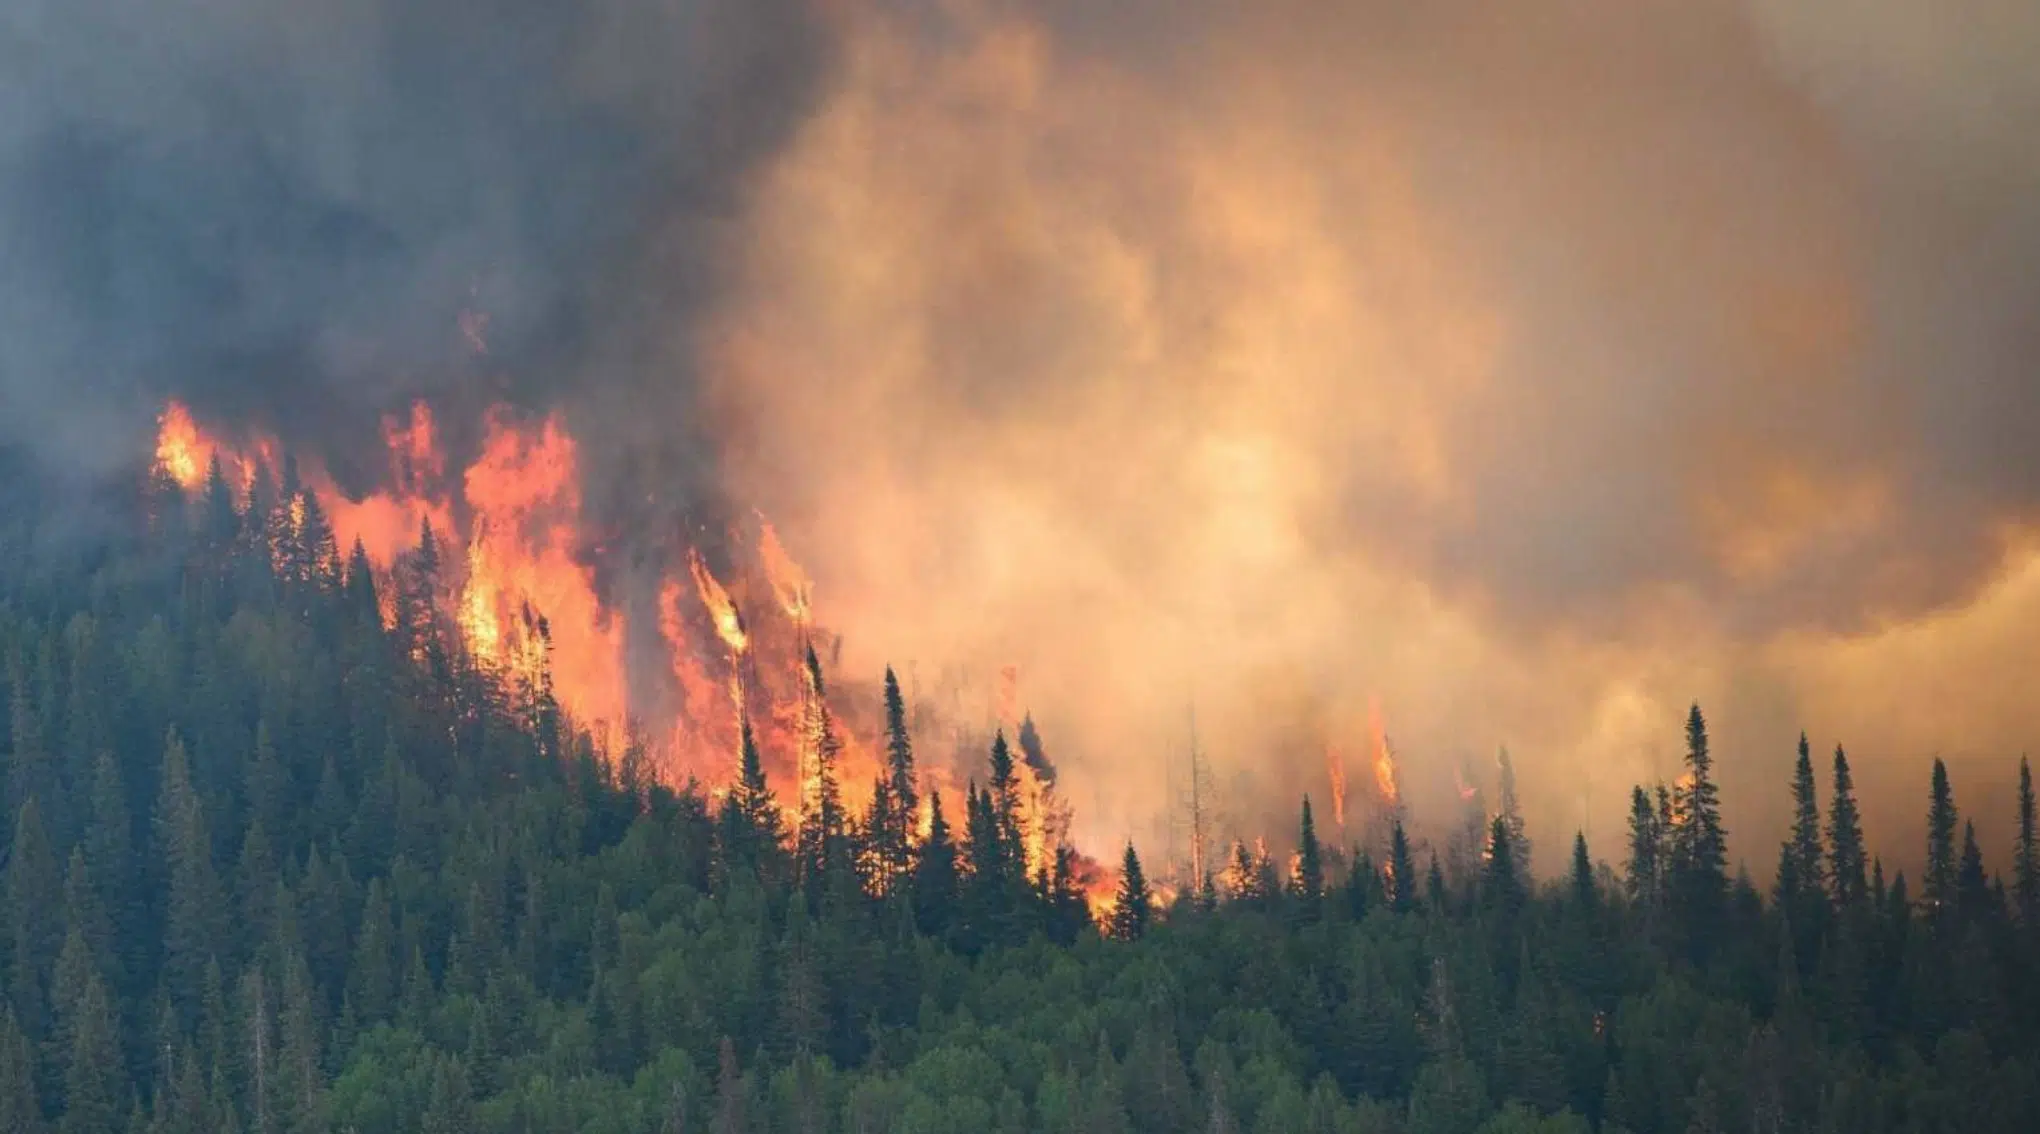 Los incendios canadienses siguen haciéndose notar en distintas partes del mundo hoy día